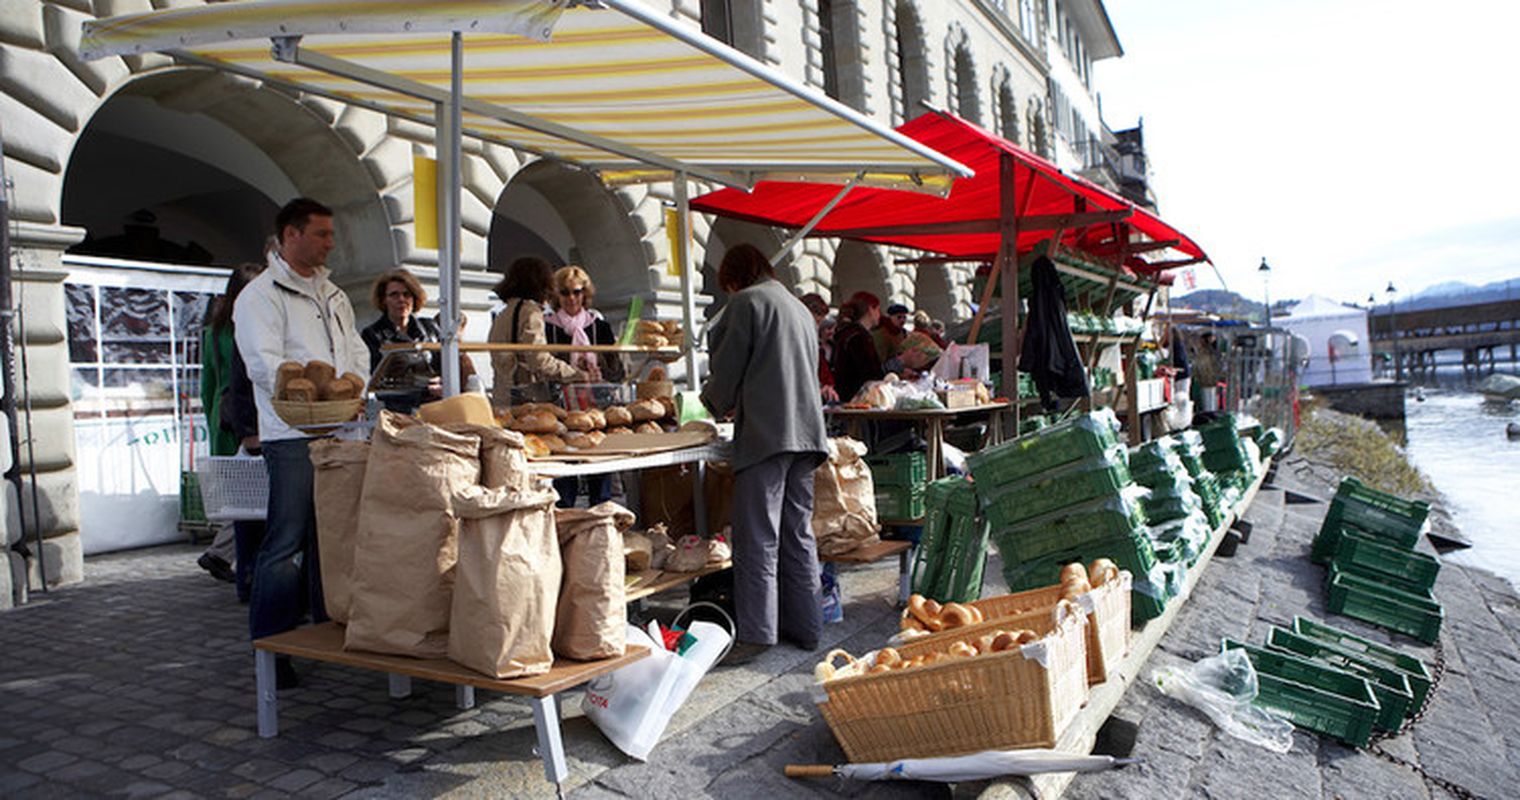 Buvetten und Quai öffnen, Wochenmarkt findet statt – aber unter Beobachtung